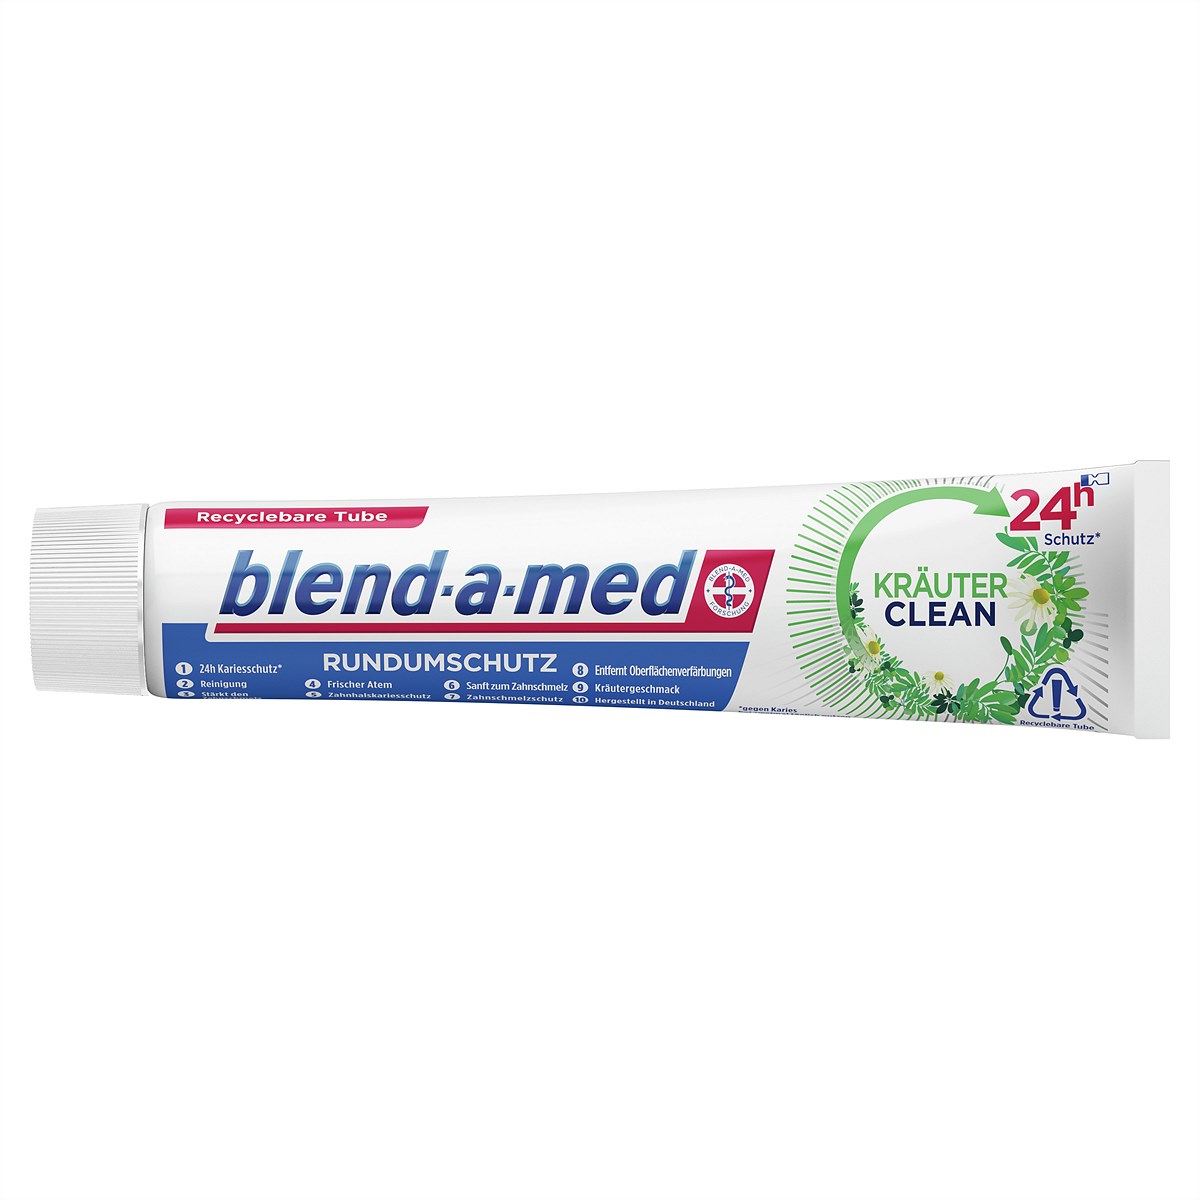 blend-a-med Rundumschutz Kräuter Clean